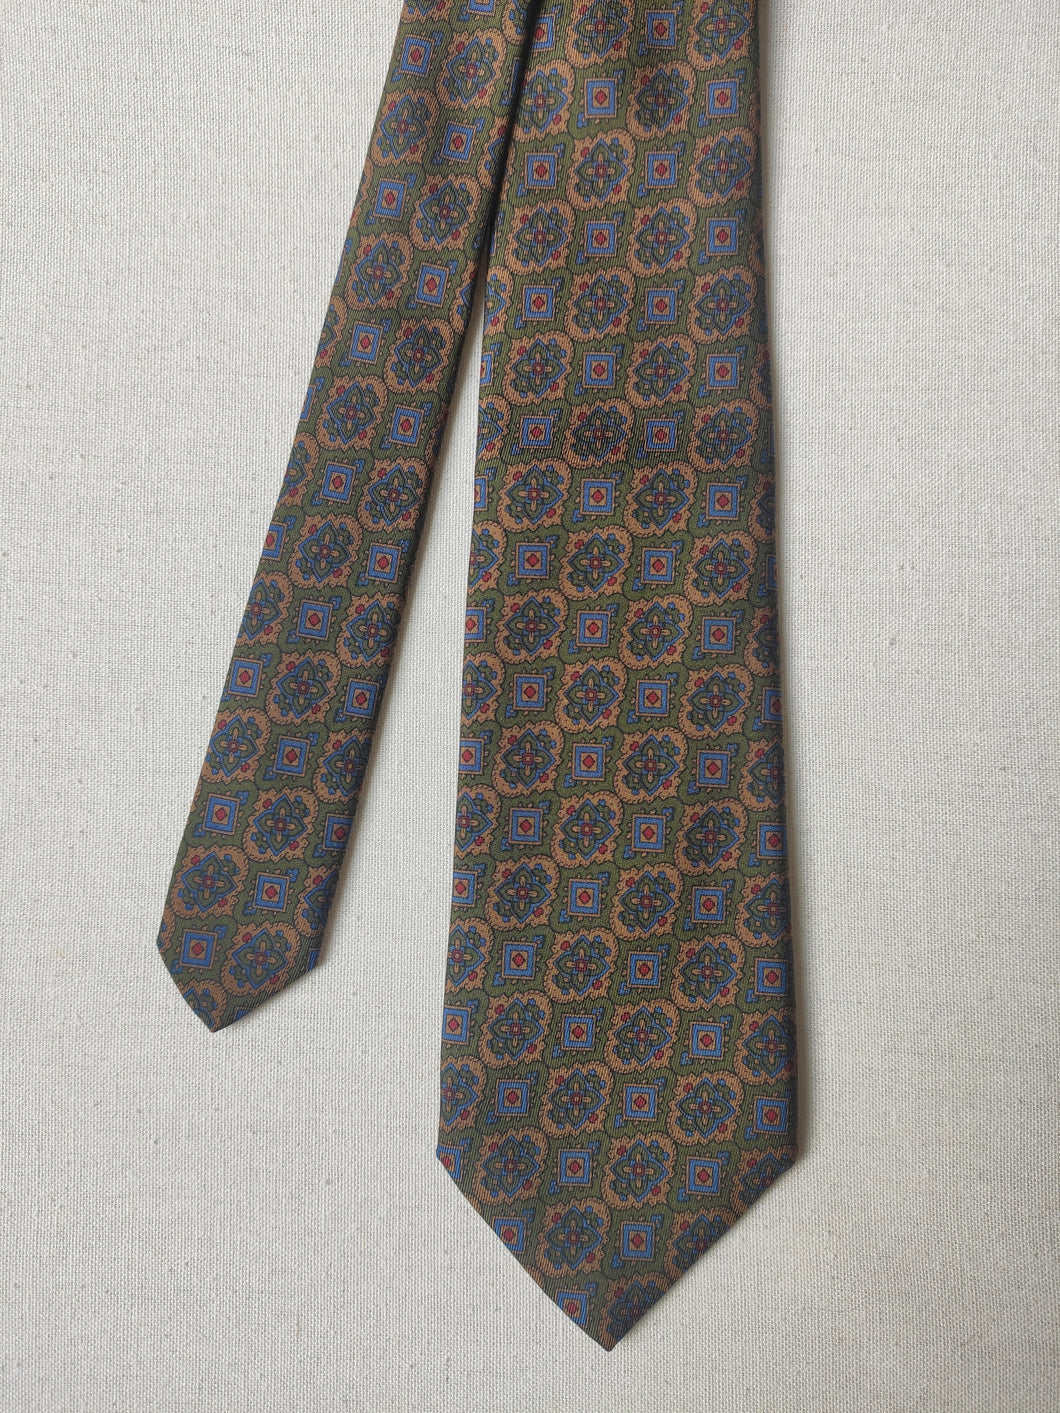 Capel Paris cravate vintage en soie à motif floral Made in Italy